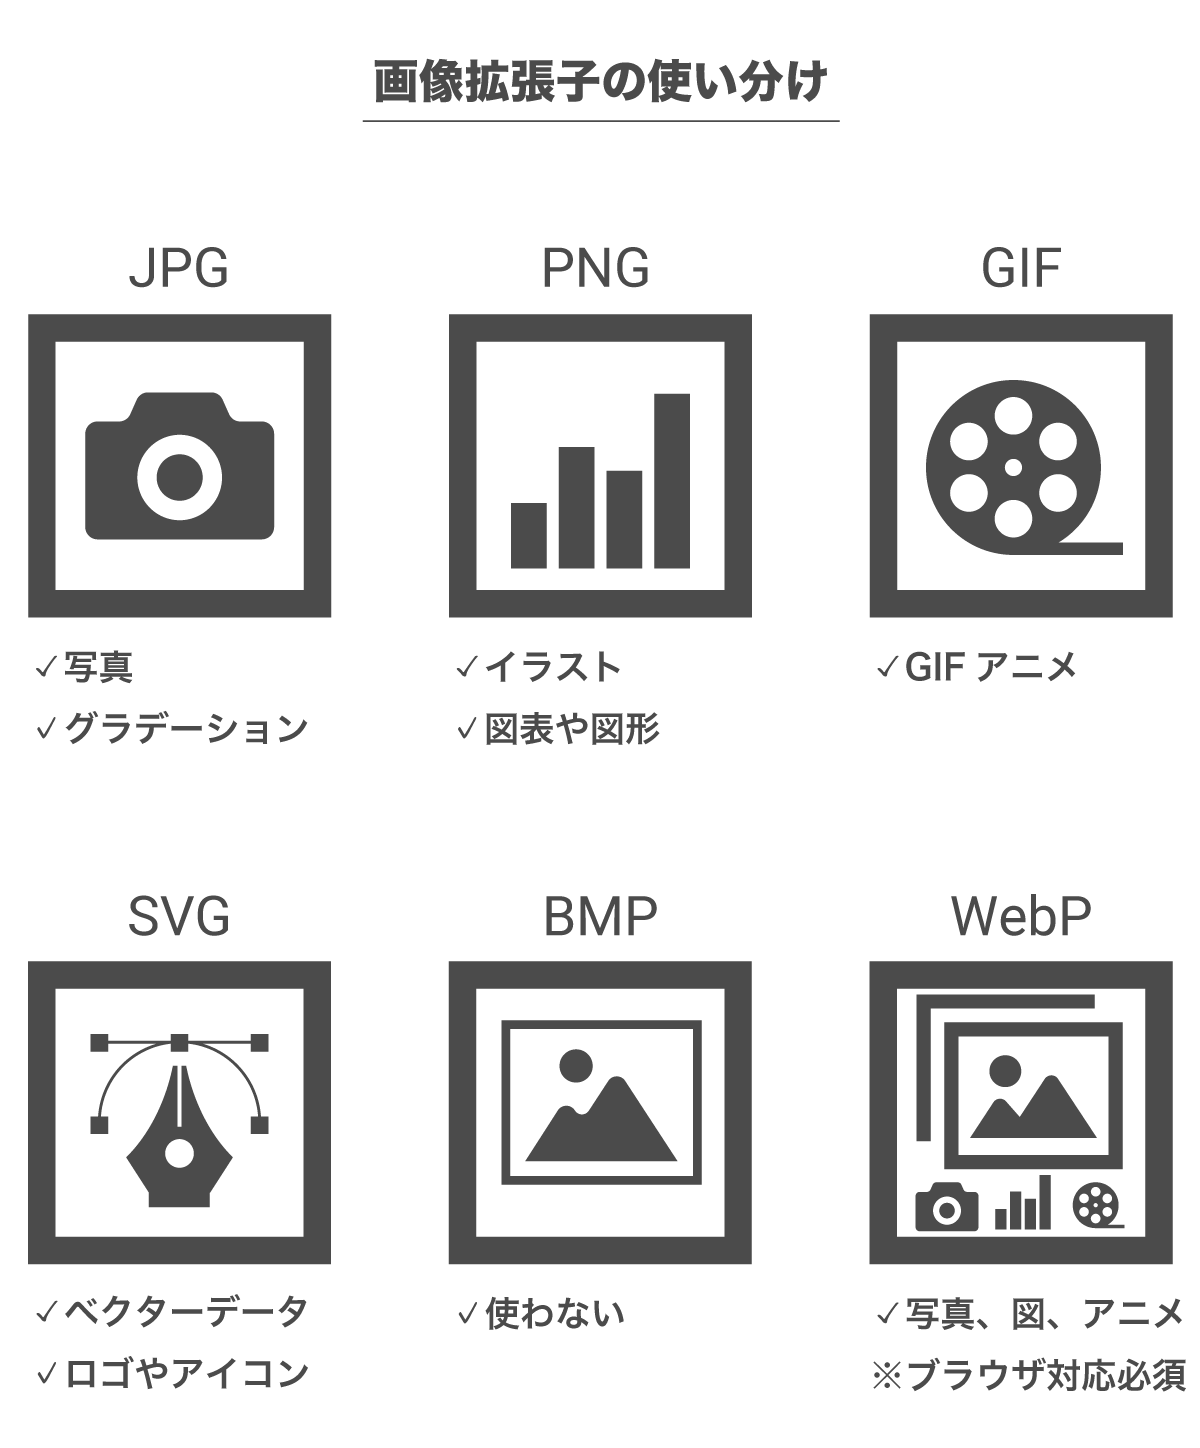 画像拡張子の使い分け（JPG/PNG/GIF/SVG/BMP/WebP）